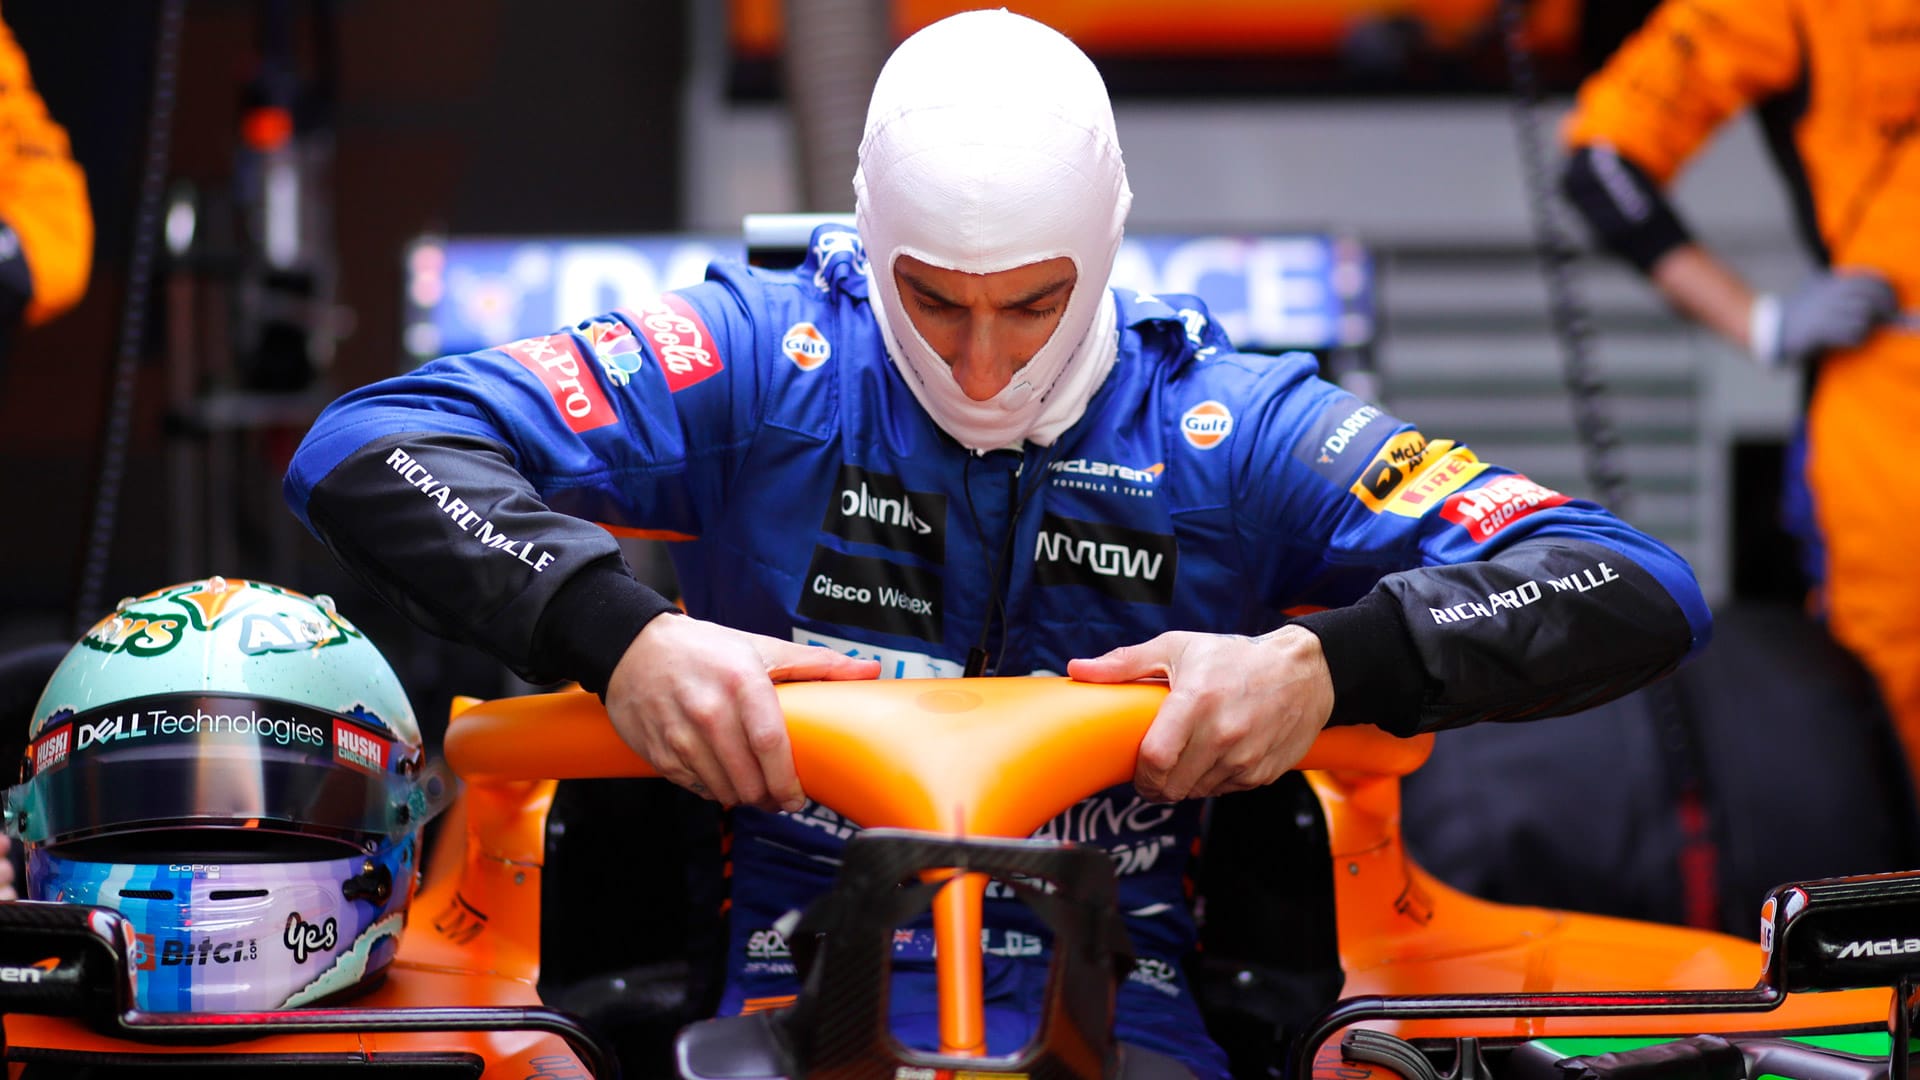 ‘Hanya masalah beberapa balapan akhir pekan lagi’ sebelum Ricciardo naik ke kecepatan di McLaren, tegas Seidl